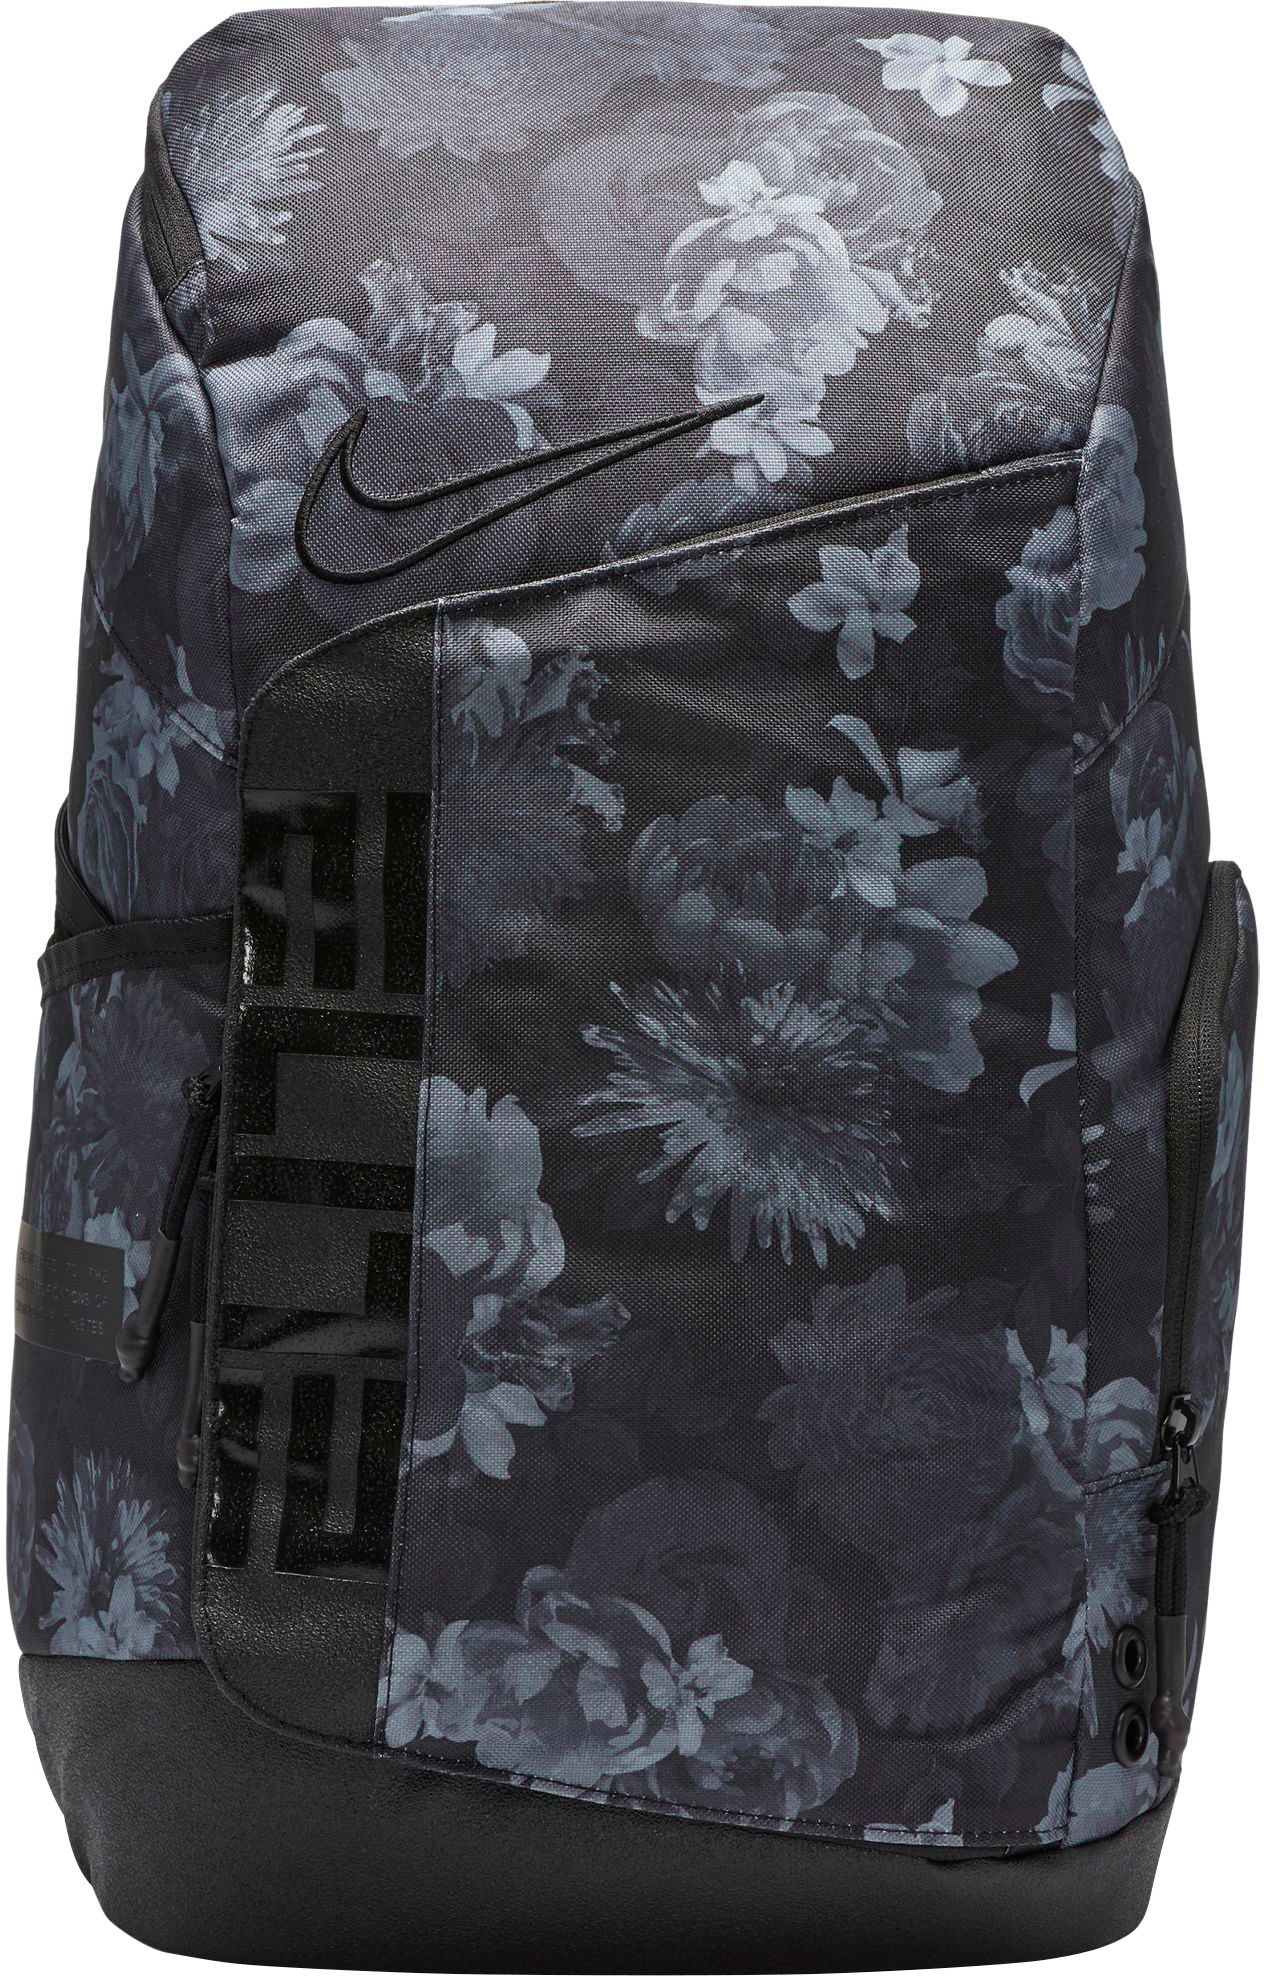 elite pro backpack